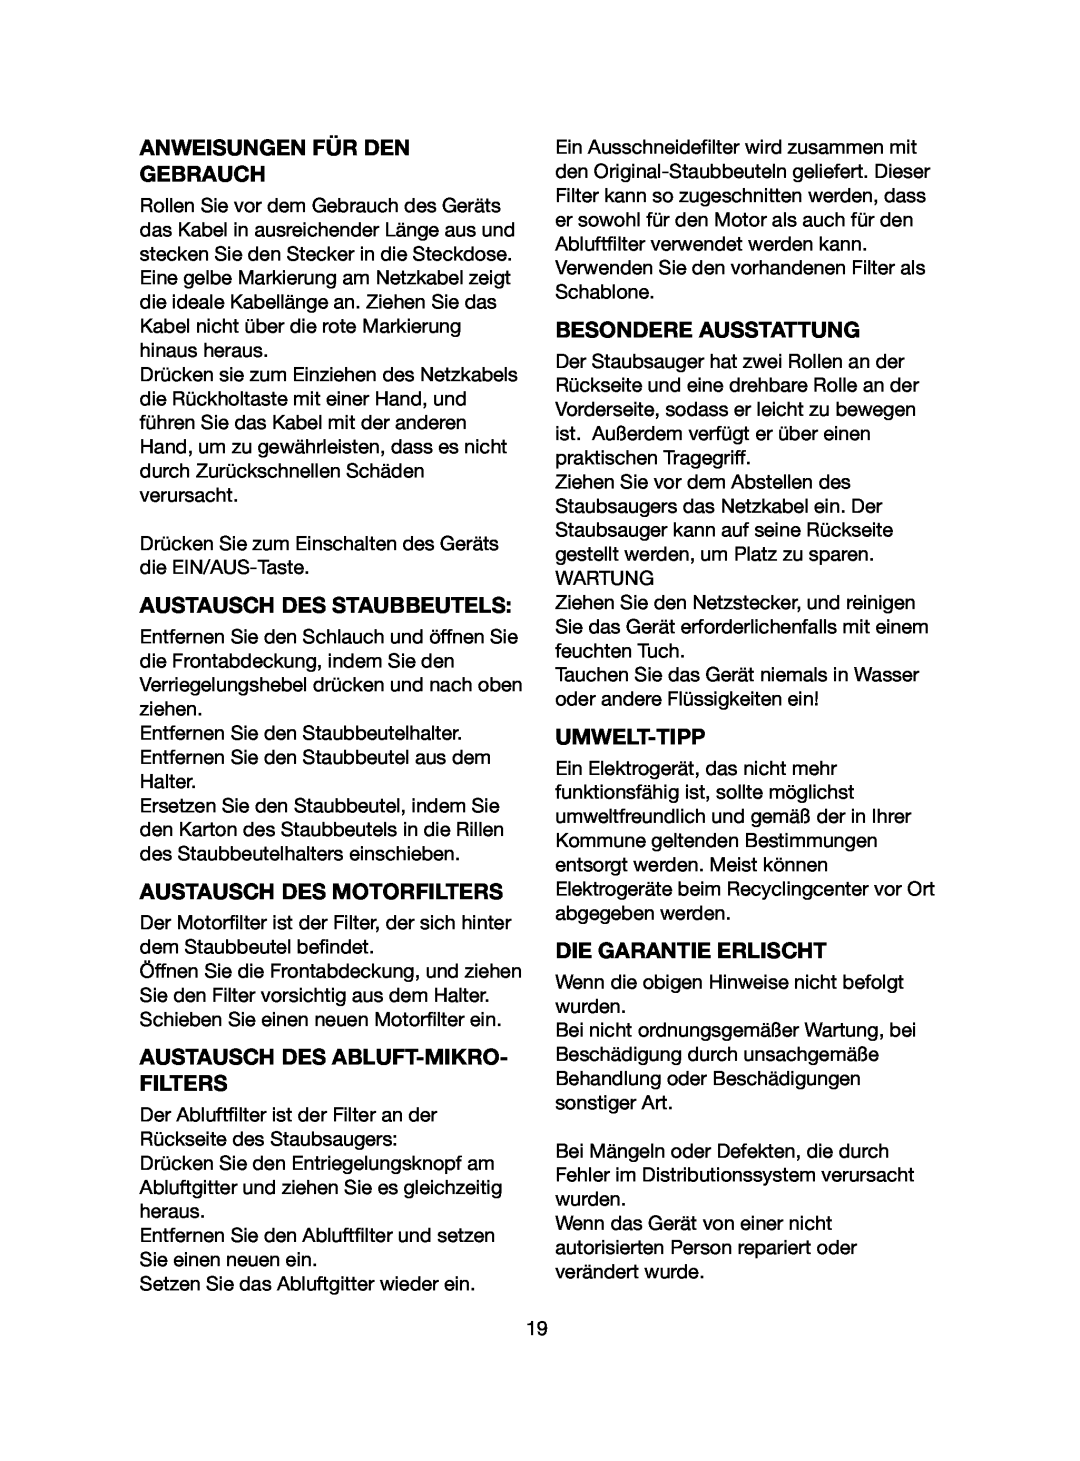 Melissa 640-107 manual Anweisungen Für Den Gebrauch, Austausch Des Staubbeutels, Austausch Des Motorfilters, Umwelt-Tipp 